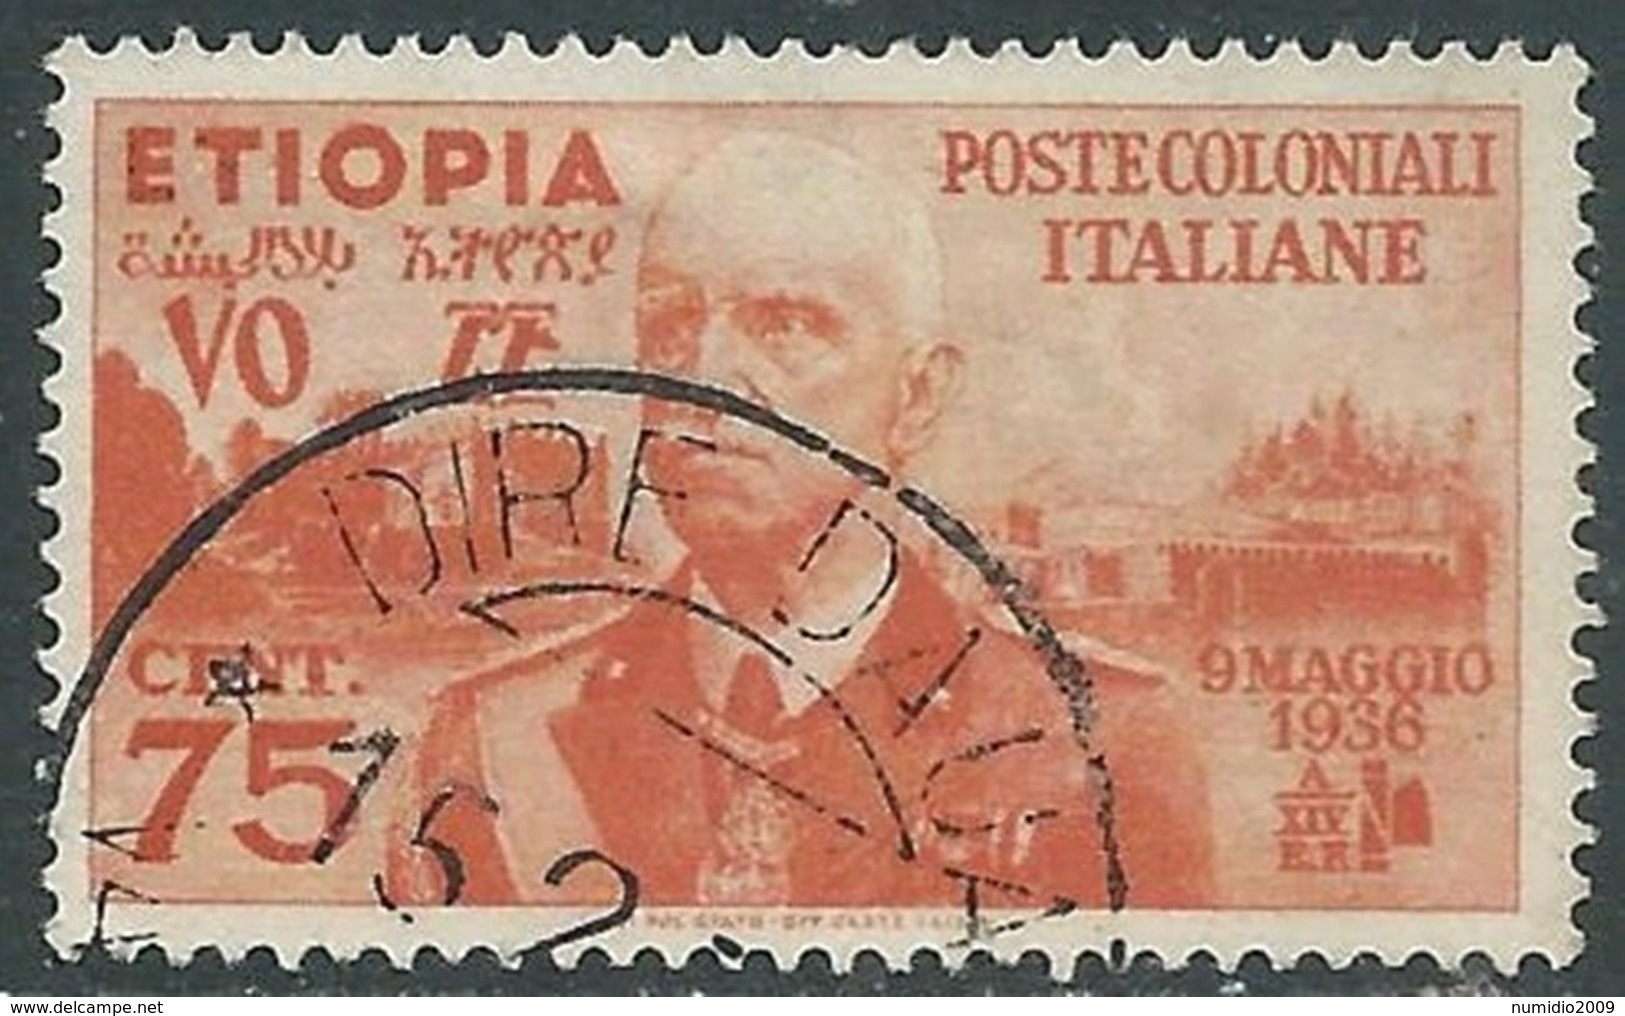 1936 ETIOPIA USATO EFFIGIE 75 CENT - UR31-5 - Etiopia